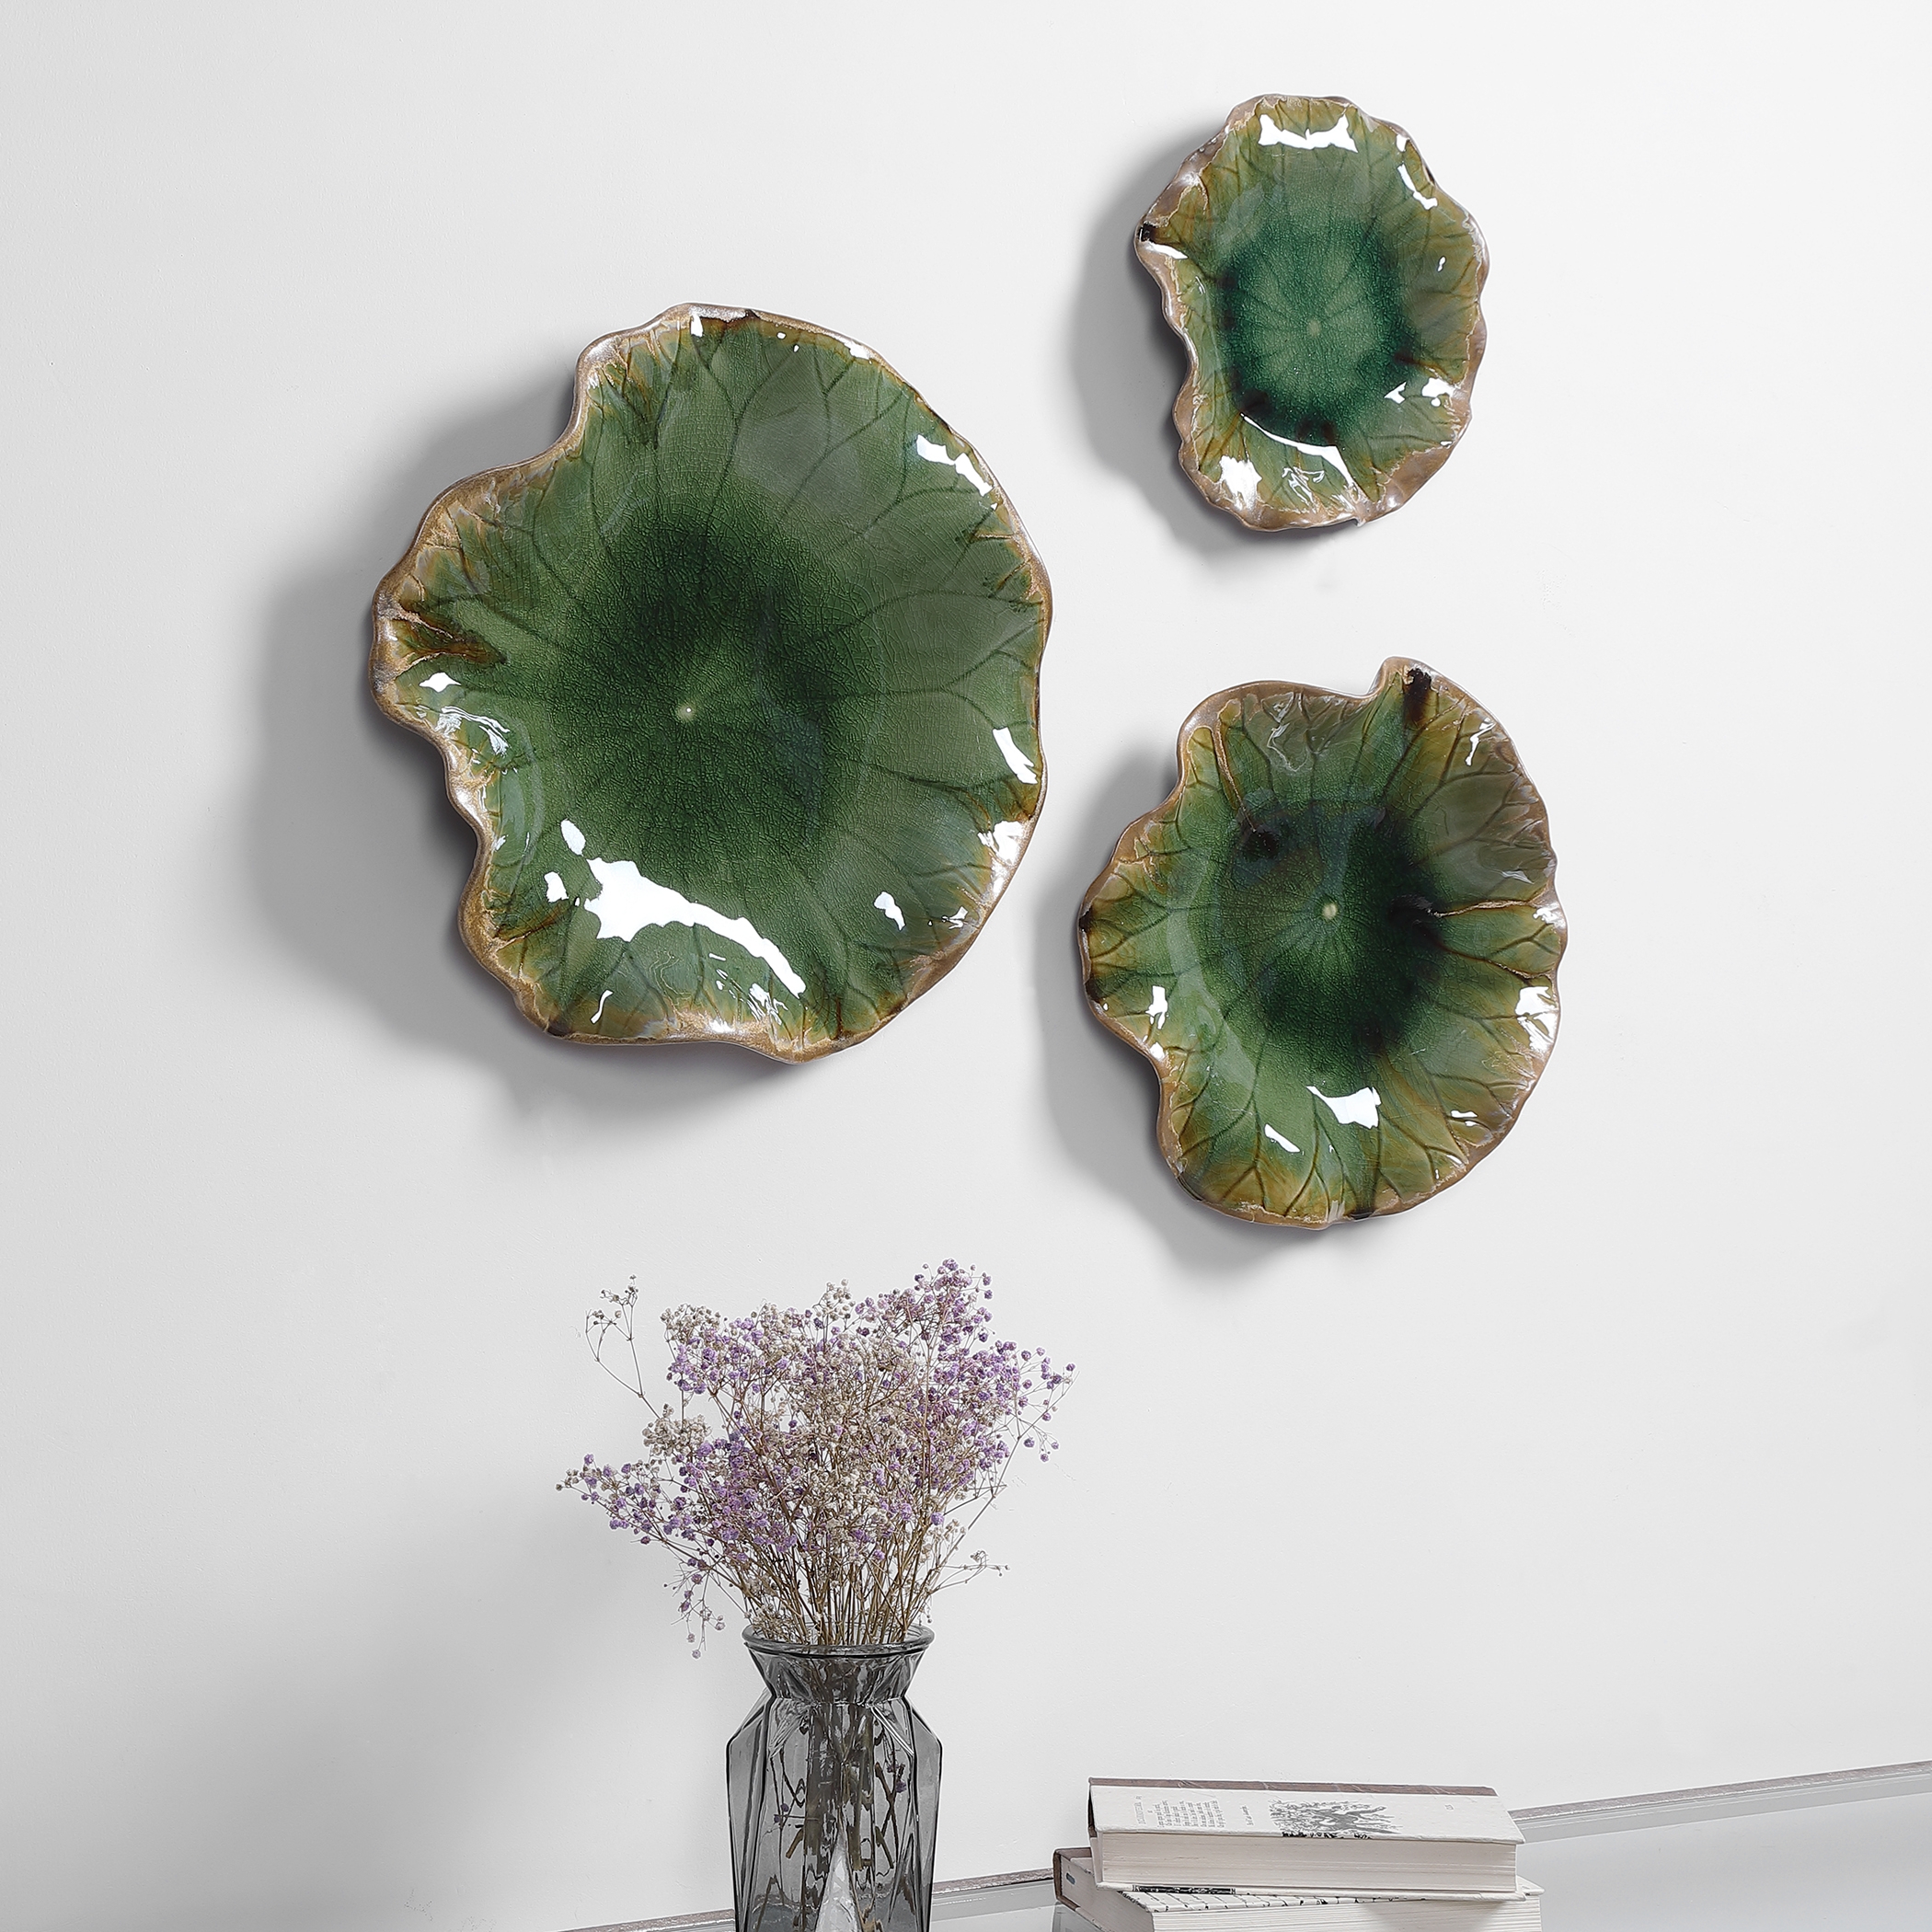 Abella Green Ceramic Wall Decor, S/3 - Image 4